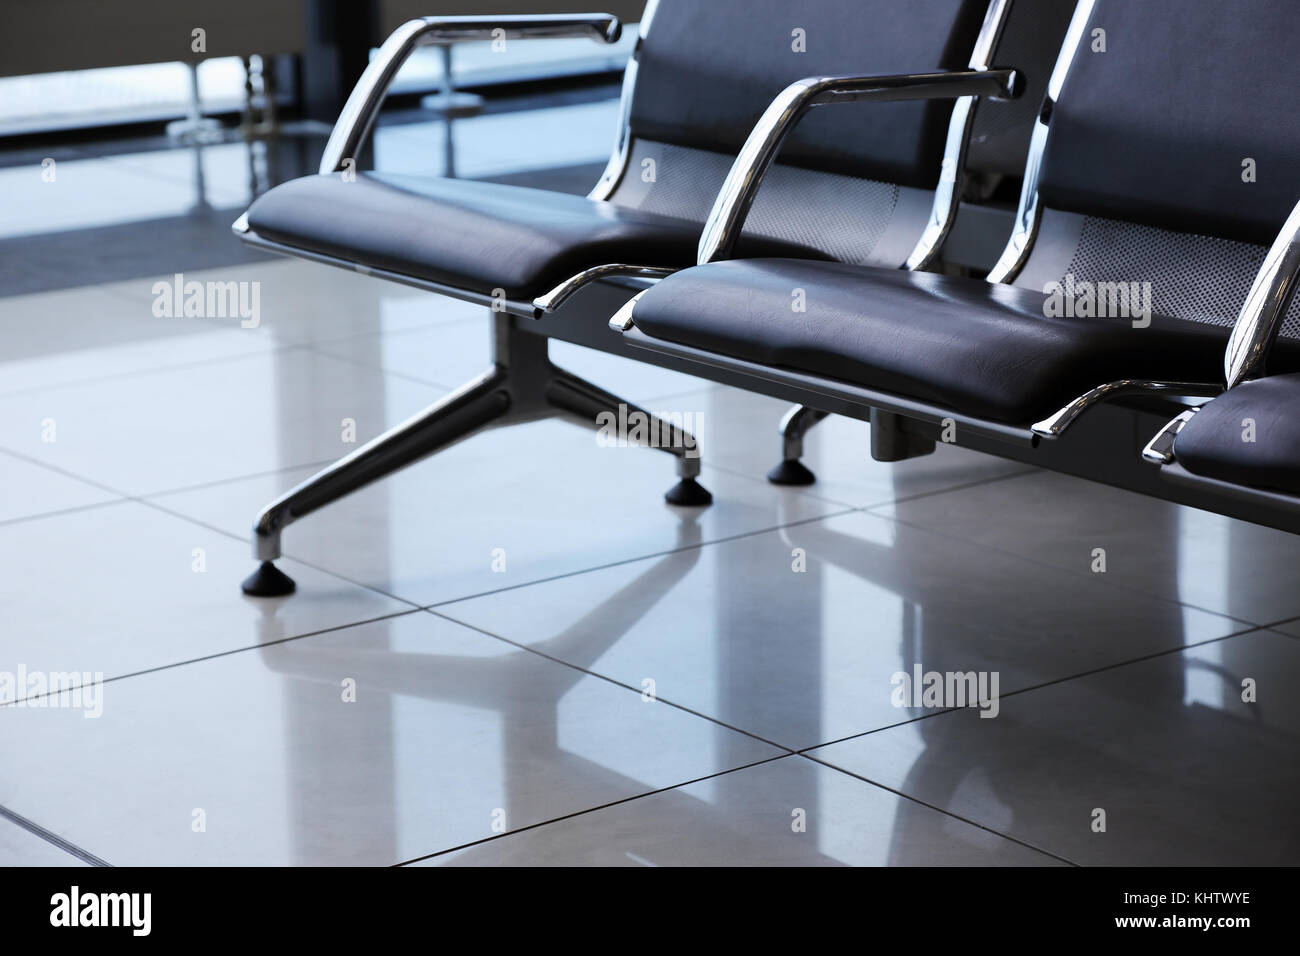 Abflughalle am Flughafen und warten Stühle Stockfoto